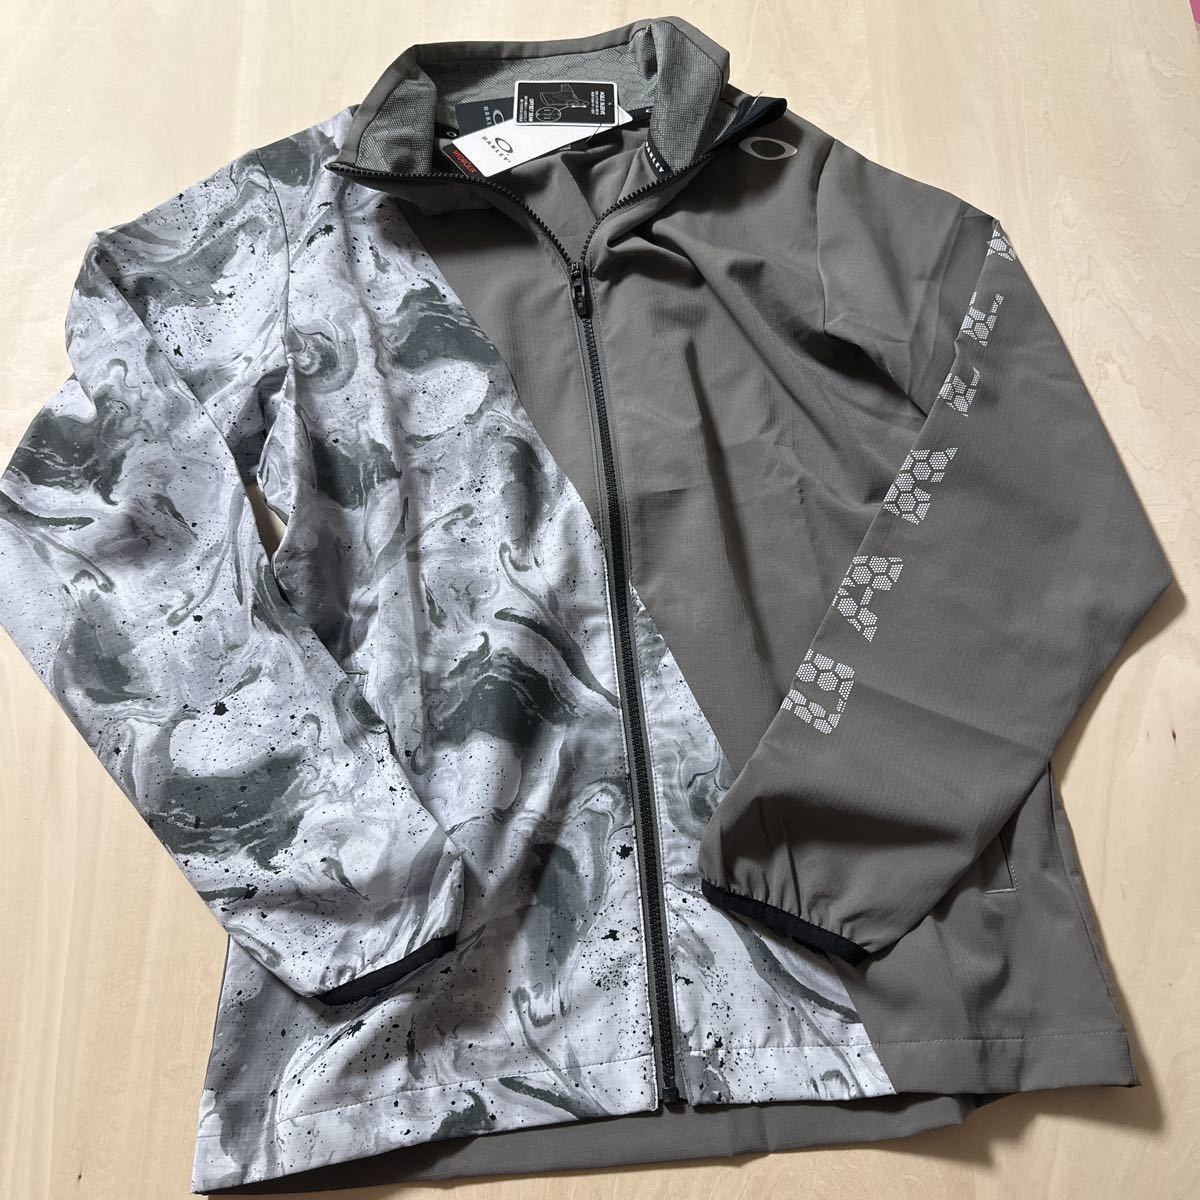 [Xl] Новый список цены 8800 Йен Оукли Оукли мужская спортивная куртка для мужчин.